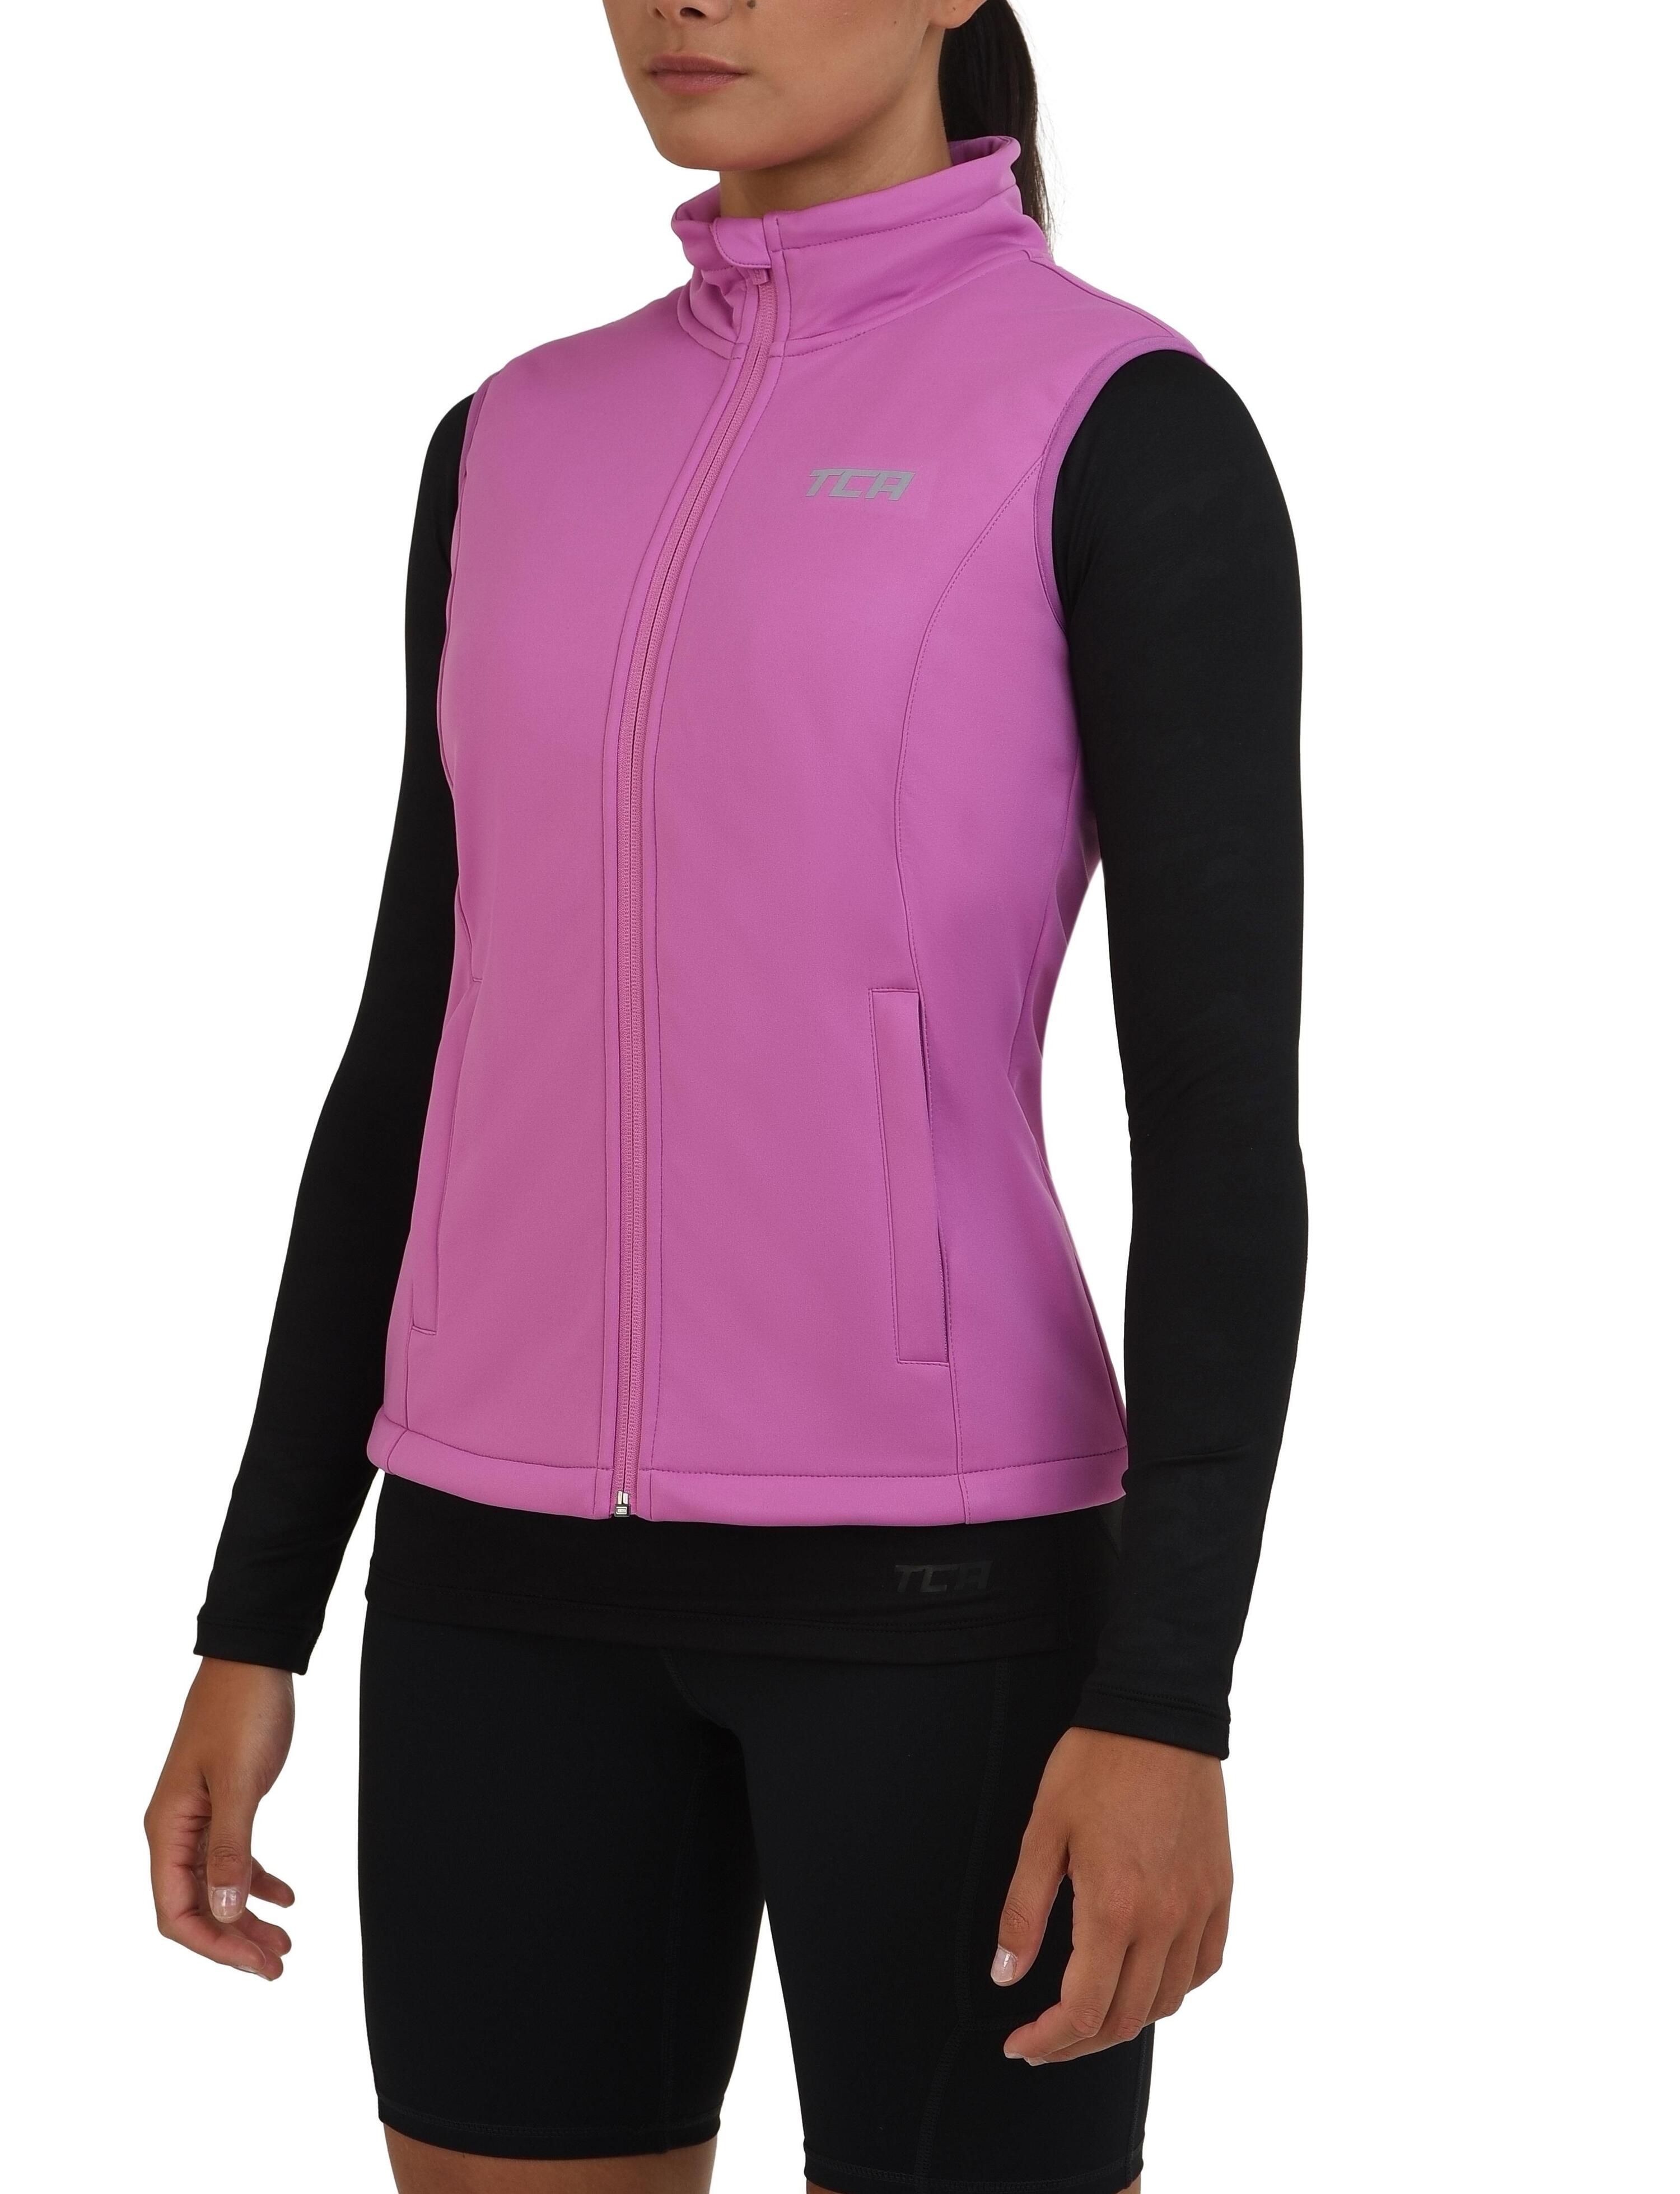 TCA Women's Wind Proof Gilet with Zip Pockets - Spring Crocus (Pink)